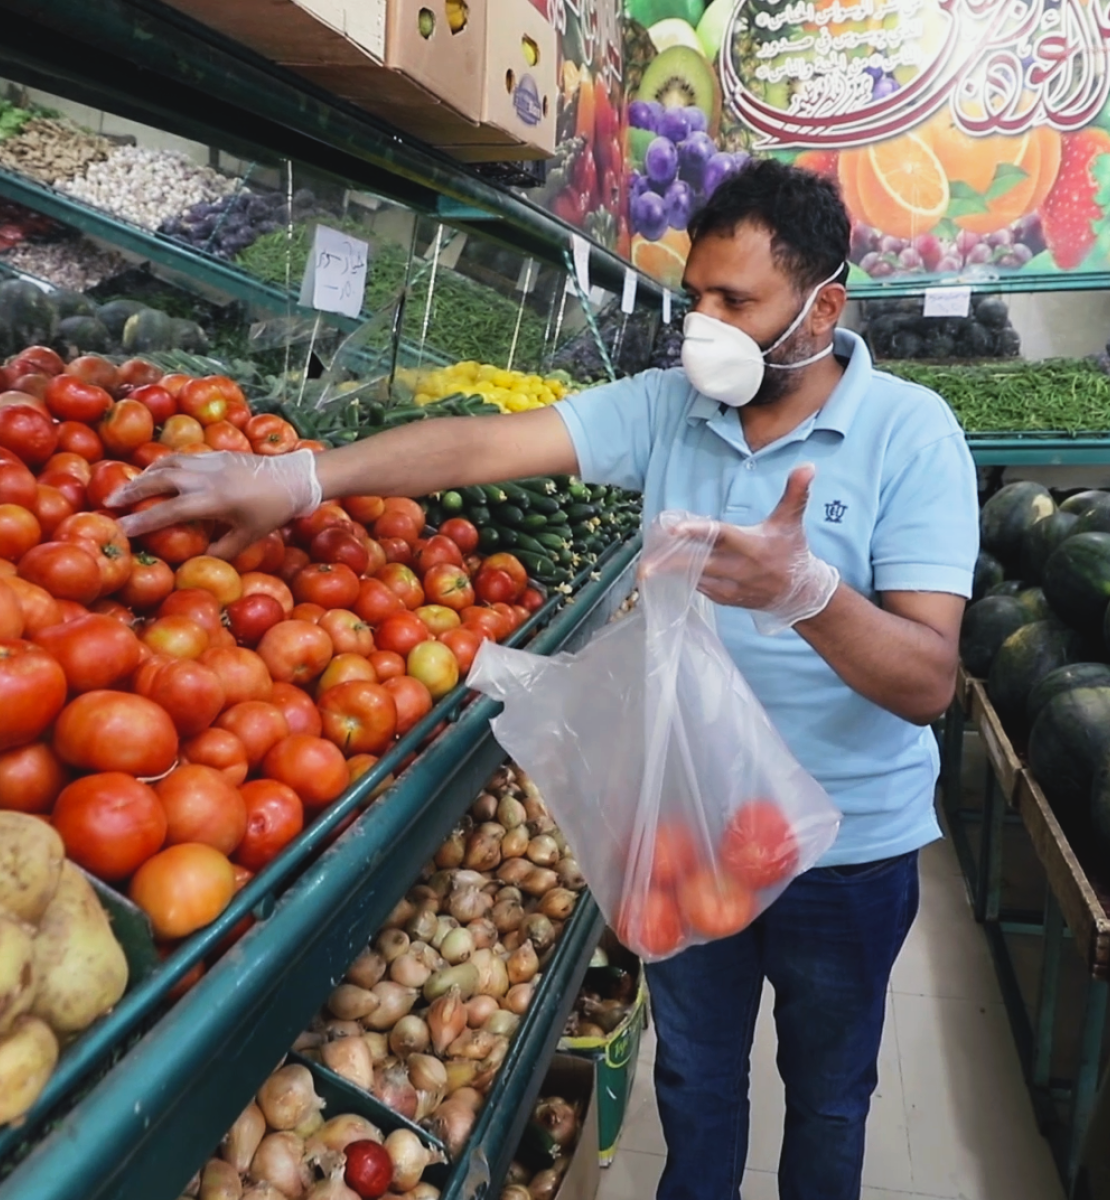 عبده ، لاجئ يمني في عمان ، يتسوق بعد إعادة فتح المحلات الصغيرة.